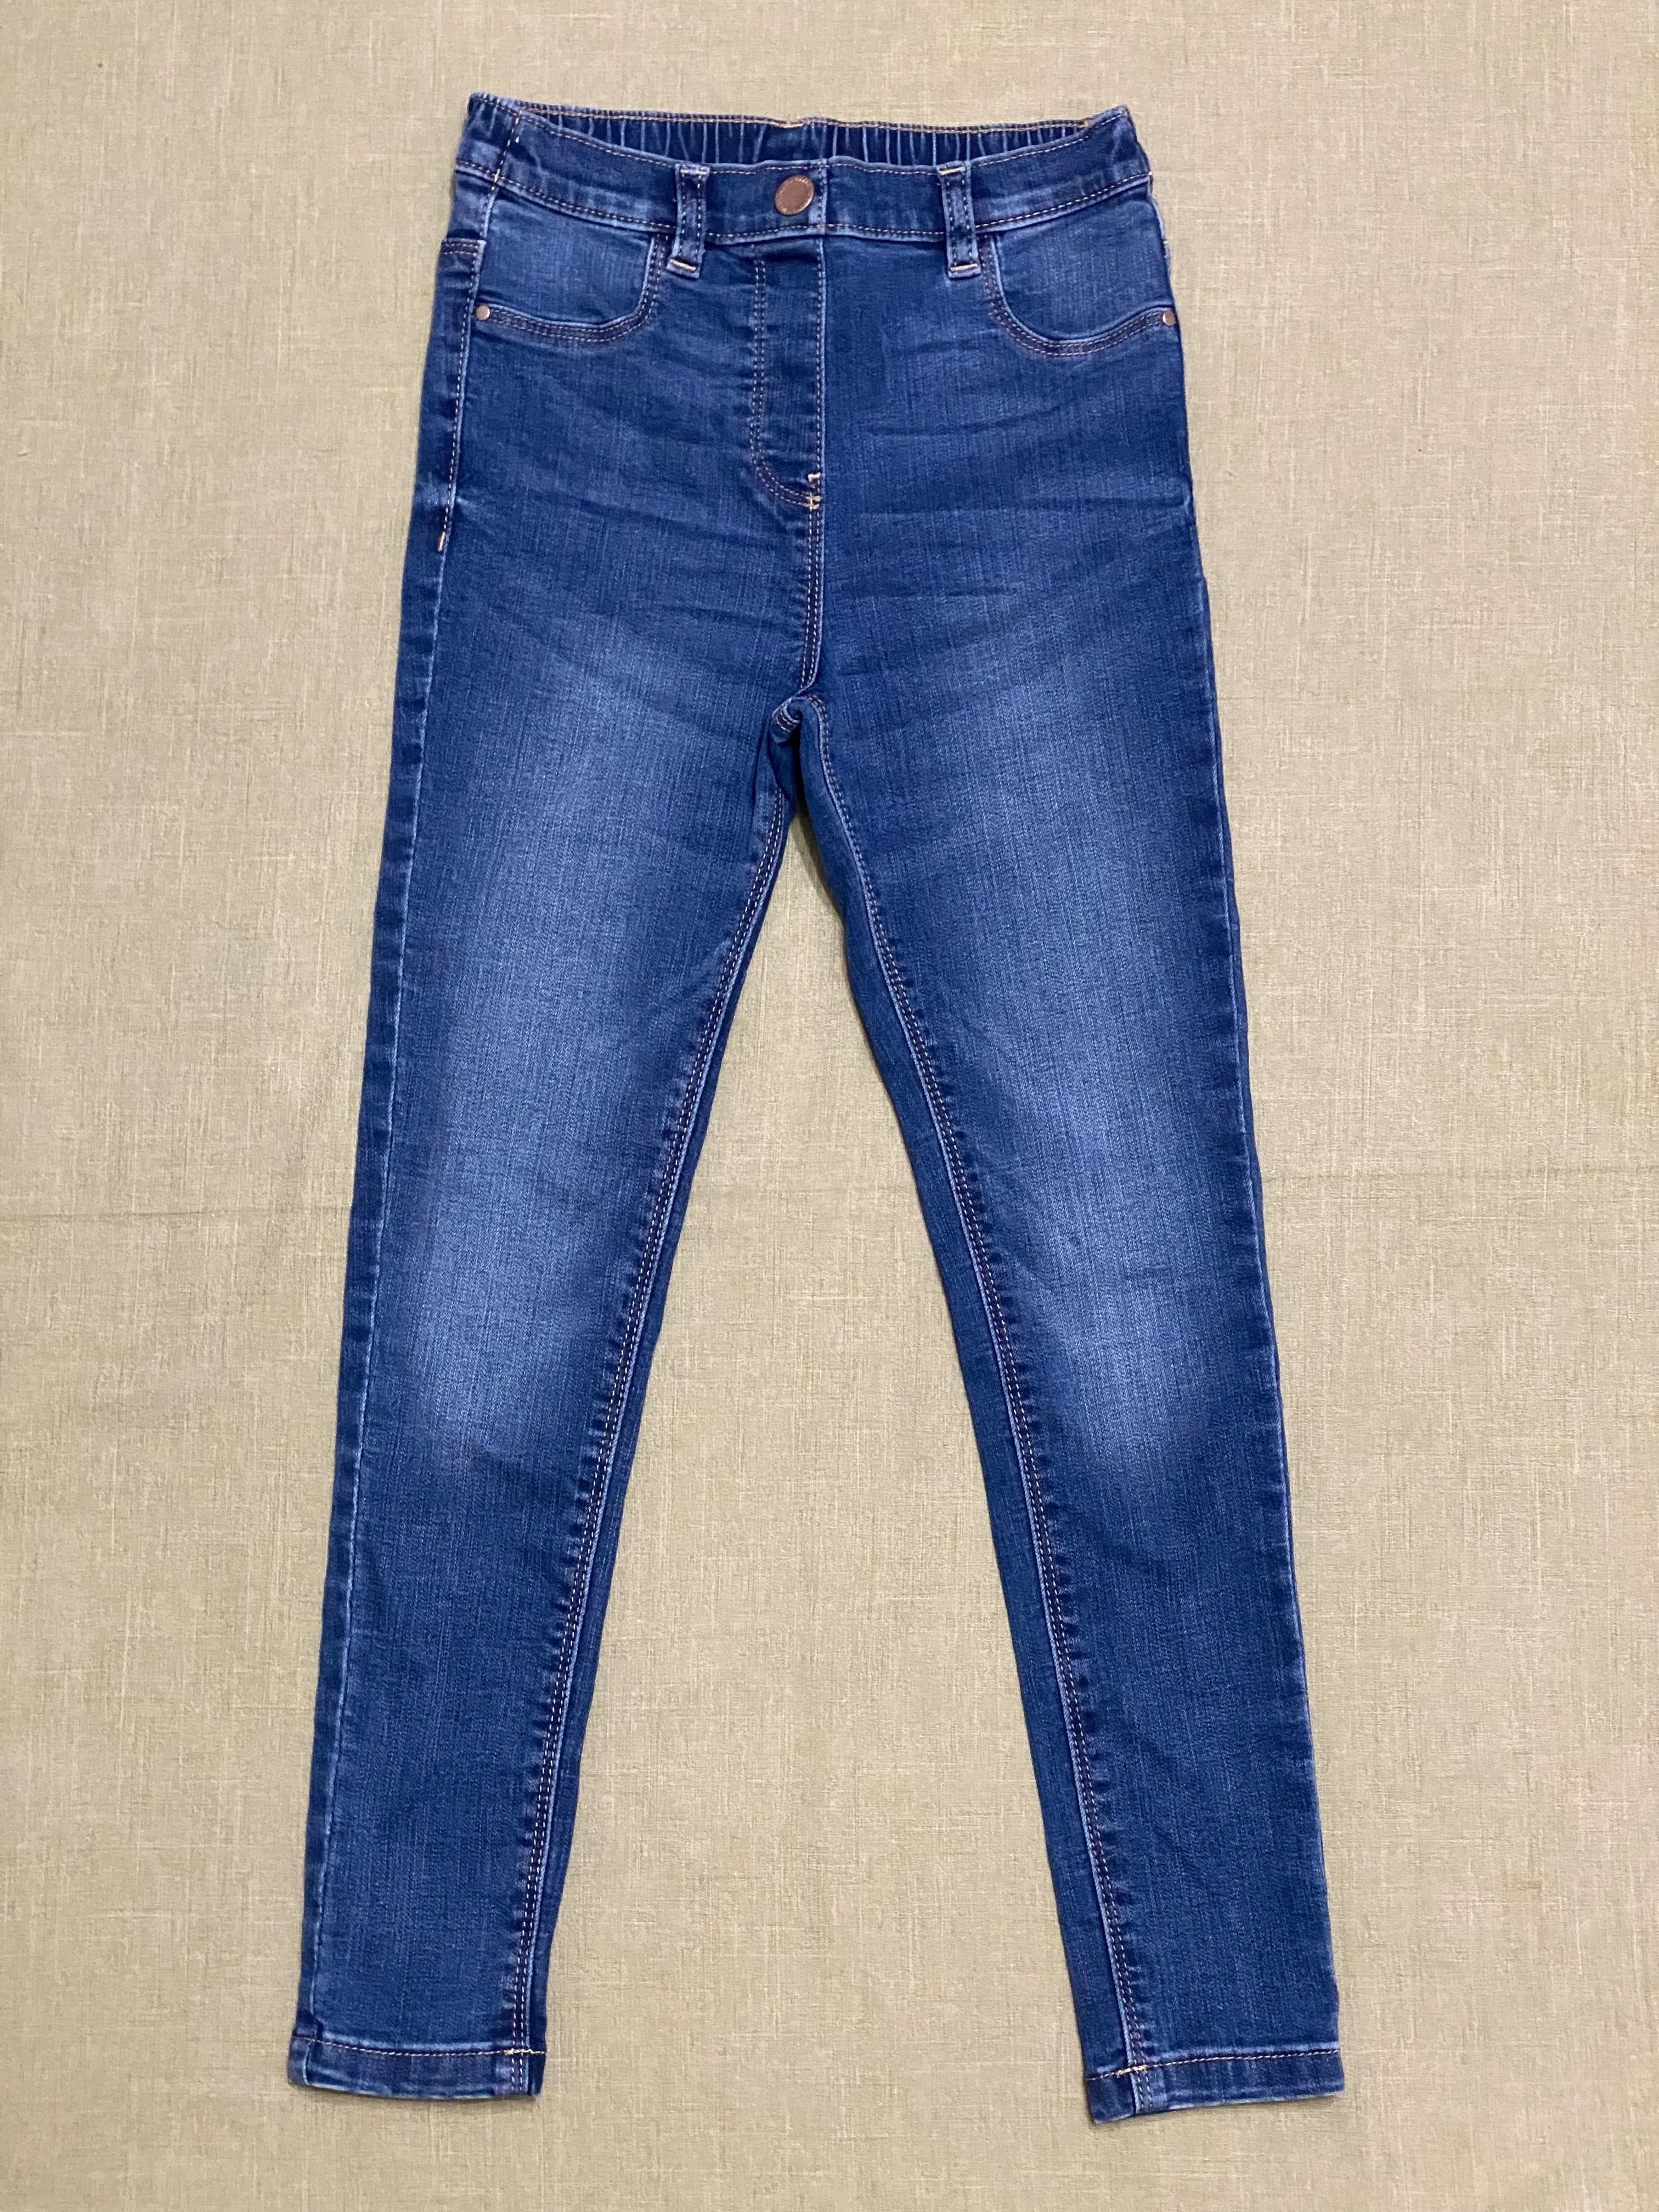 Набор одежды девочке 6-7 лет 116-122 см блуза и джинсы